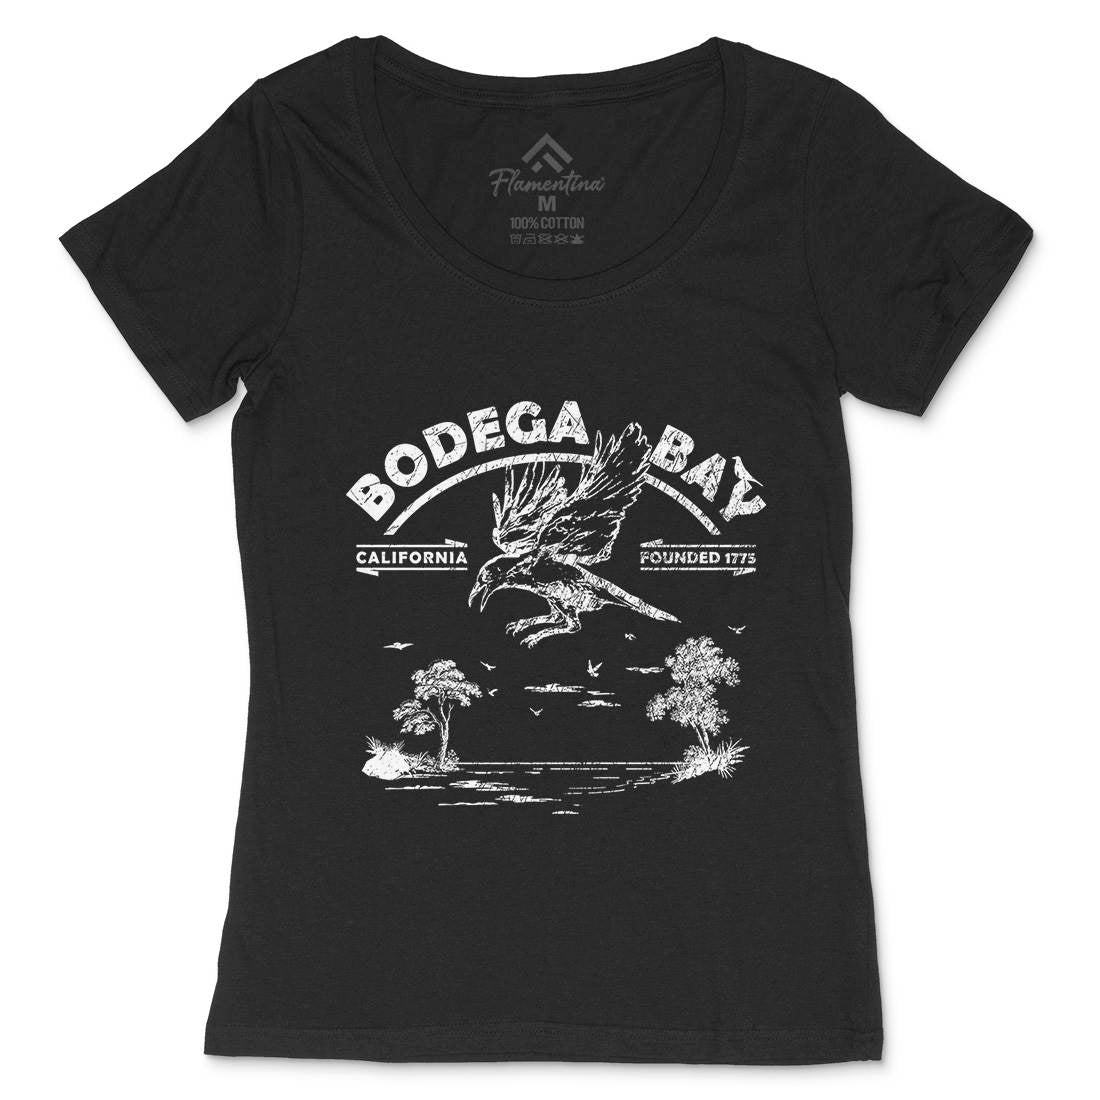 Bodega Bay Womens Scoop Neck T-Shirt Horror D310